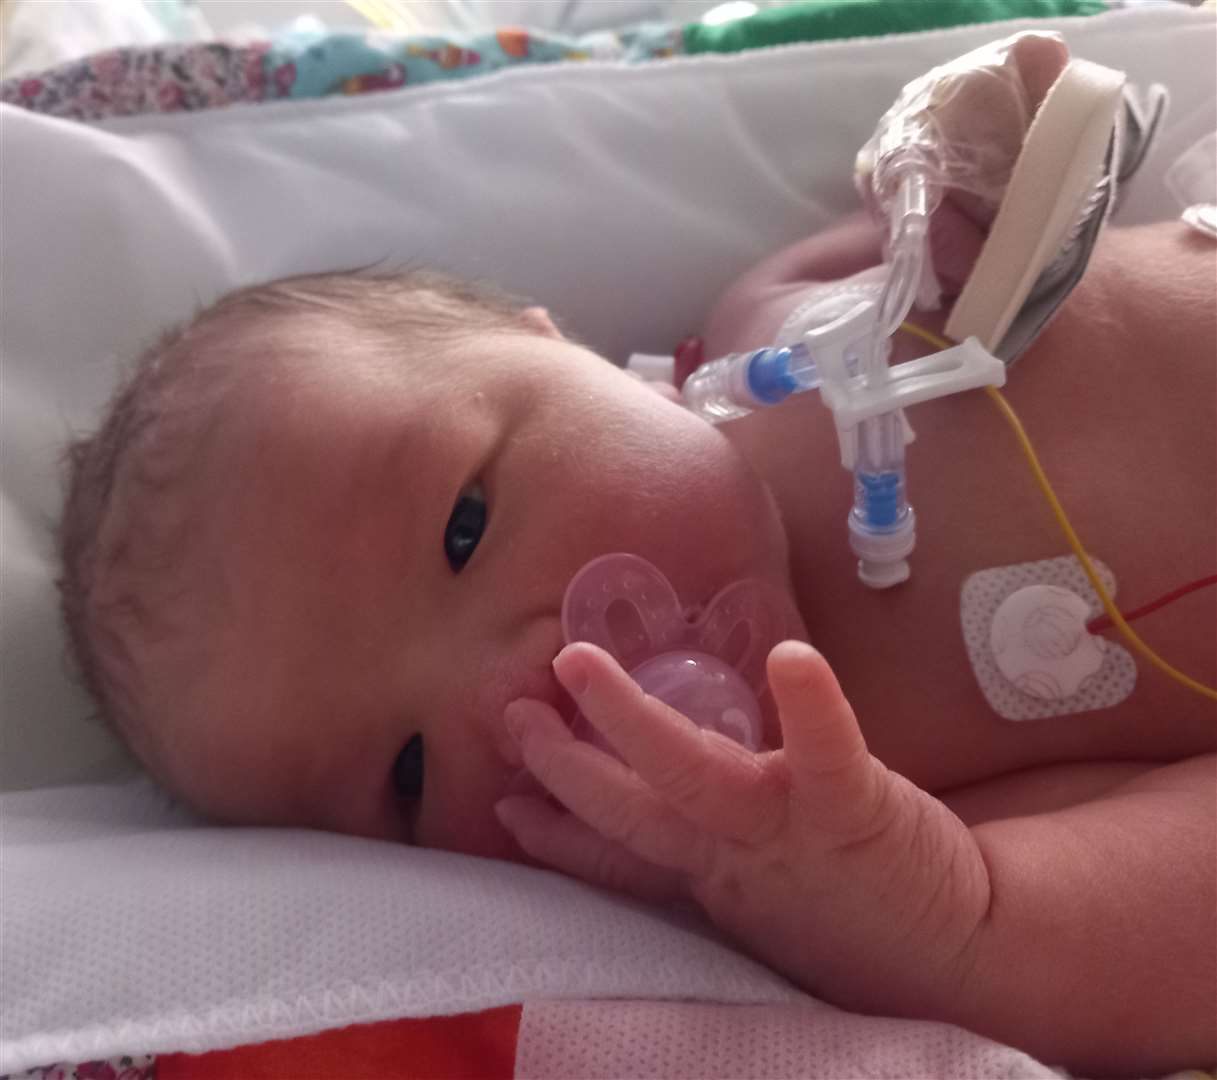 Newborn Maisie in a hospital incubator